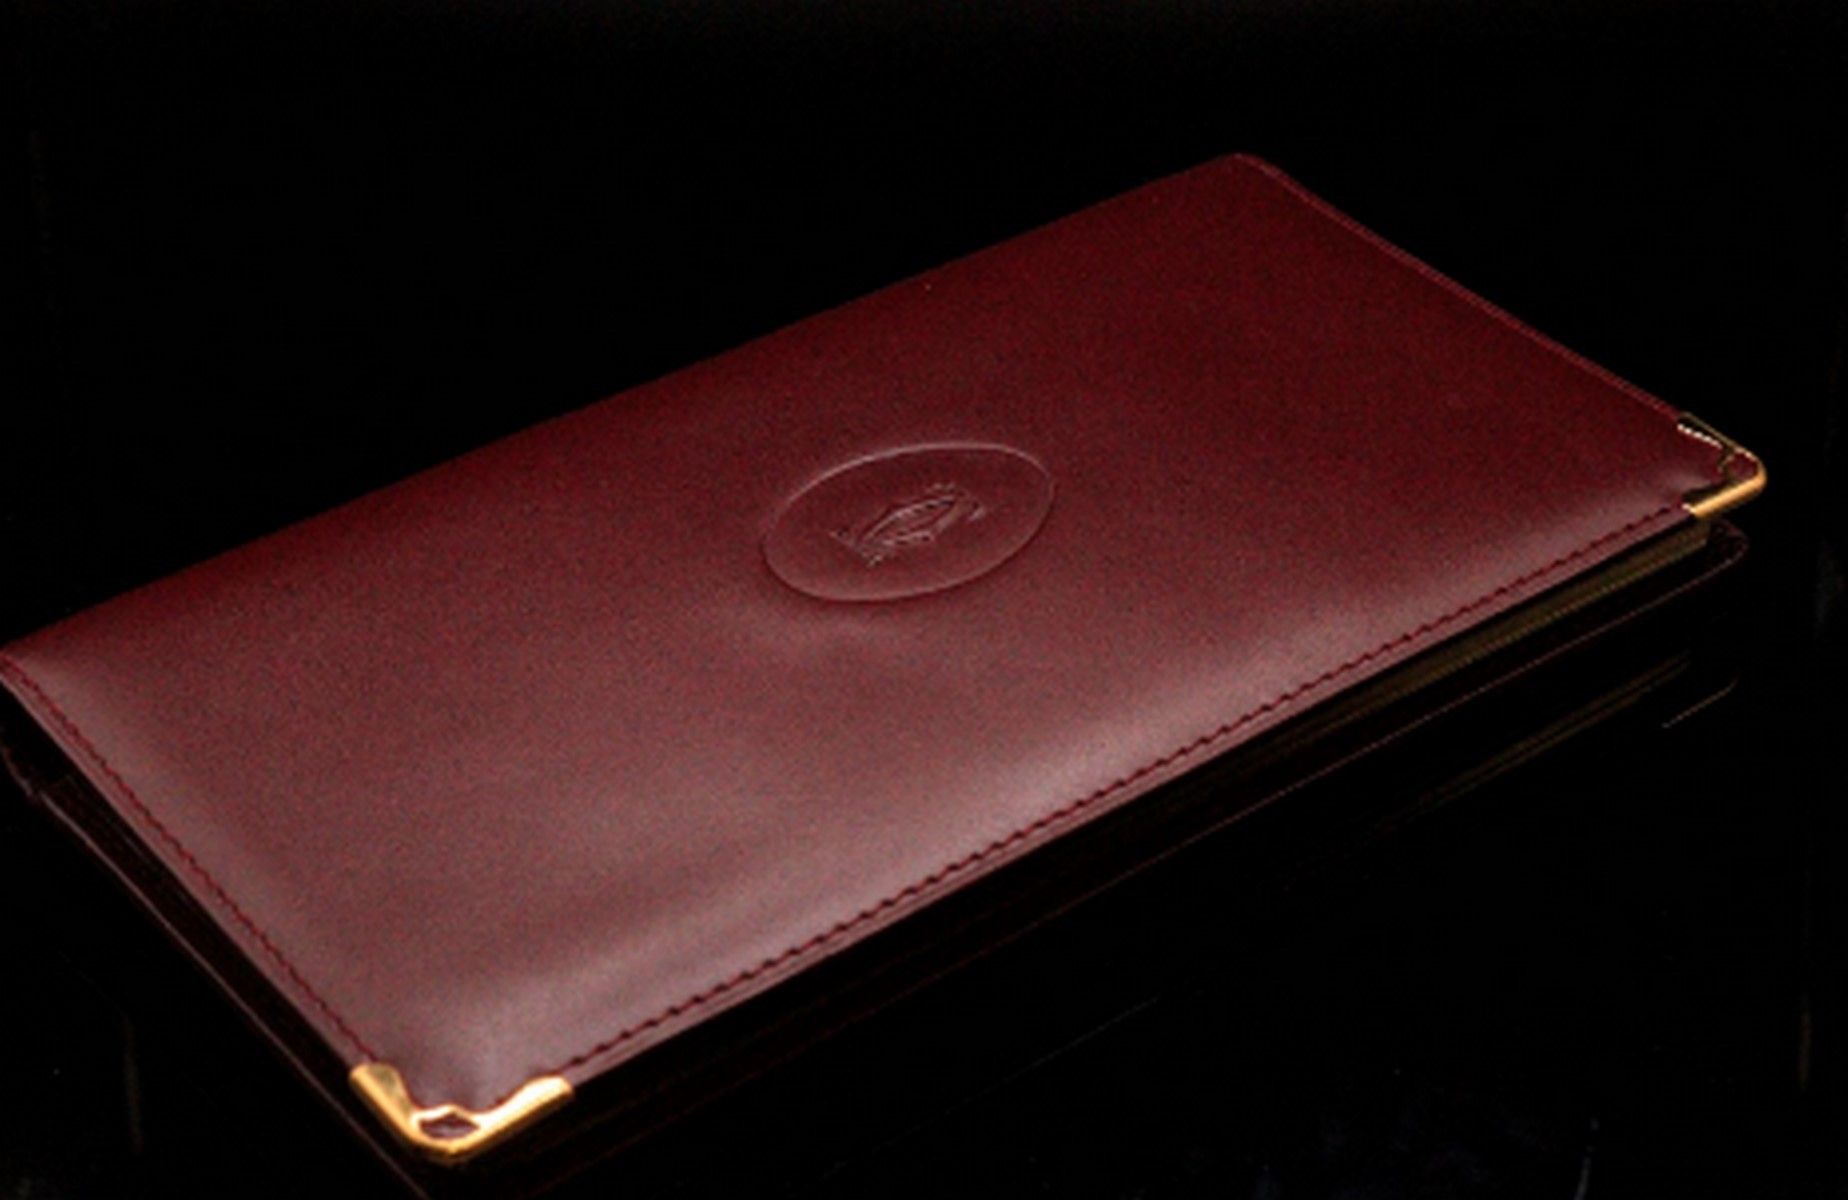 Null 卡地亚 

酒红色皮革和金色珠宝日记本夹。 
内含一本空白的 1998 年日记本和一本地址簿。 

高度：17.5 厘米